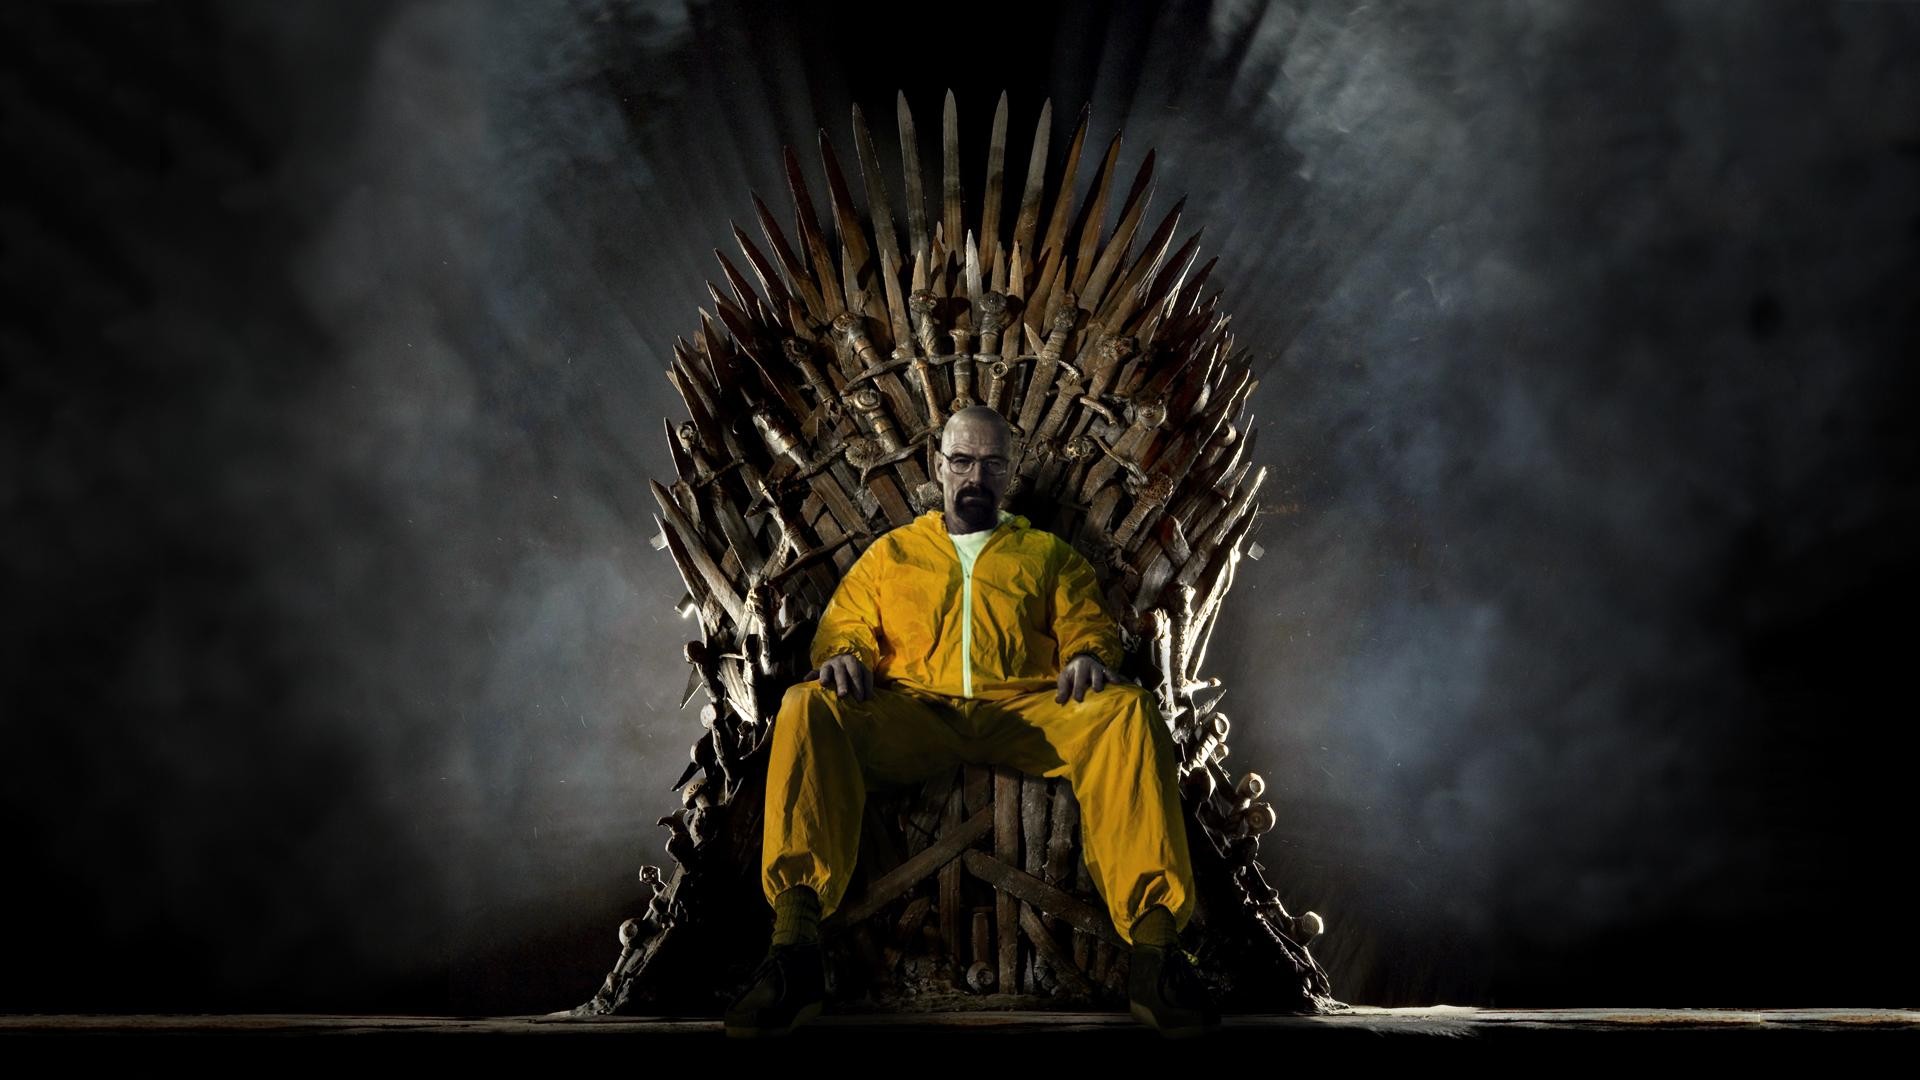 Walter White sitting on the Iron Throne